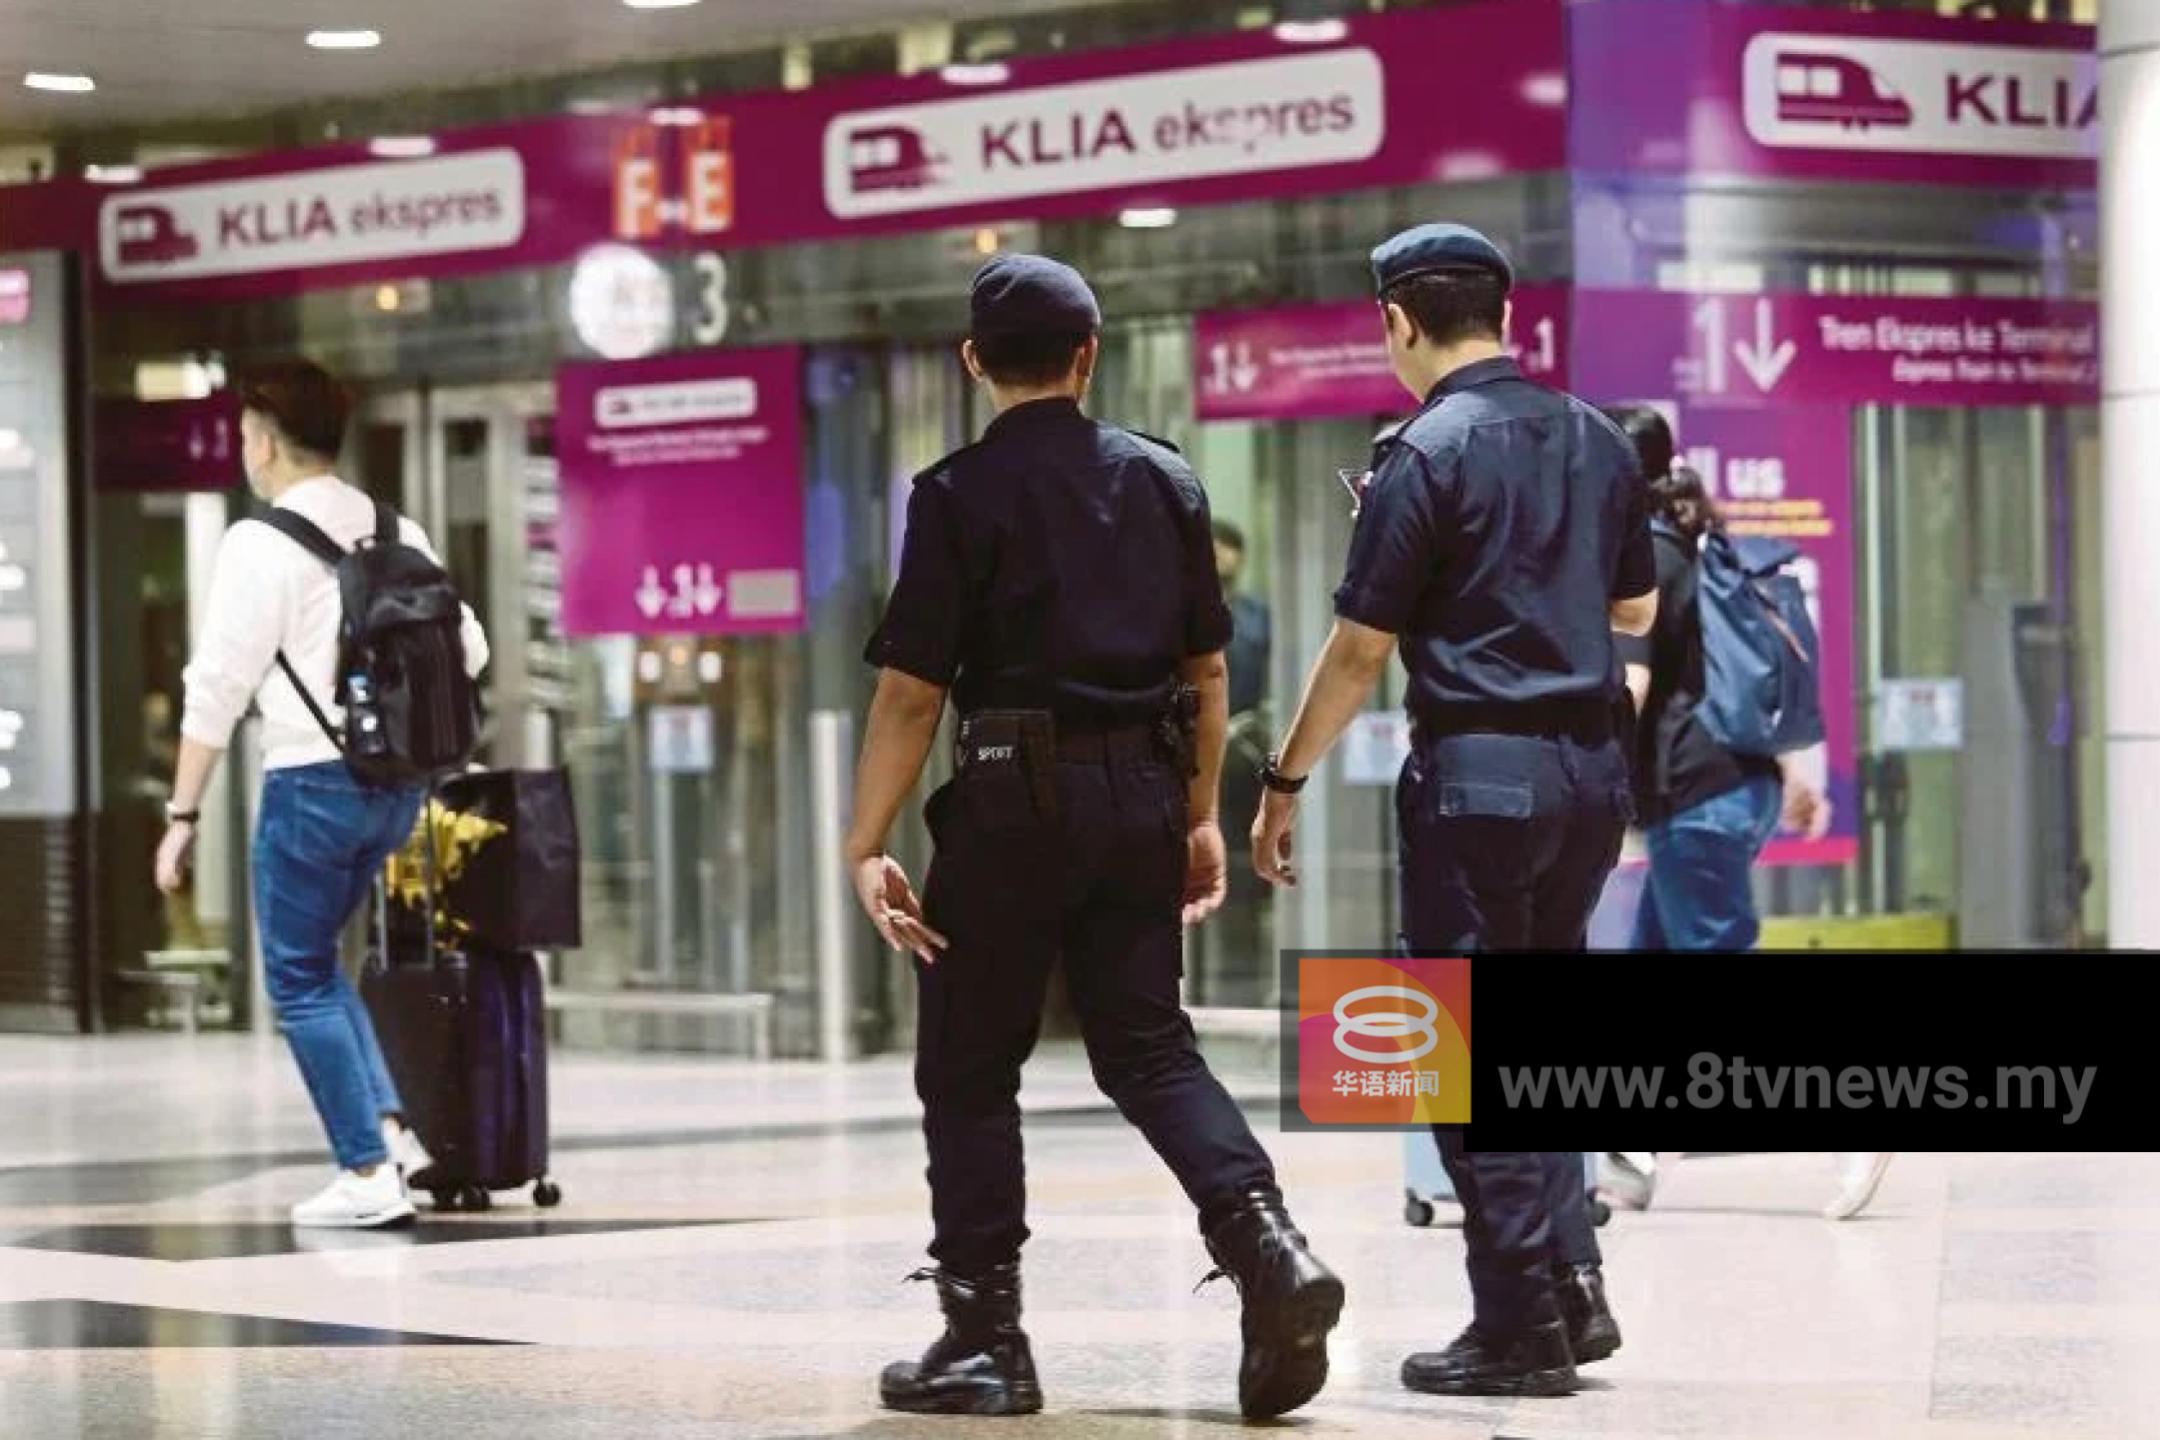 吉隆坡国际机场枪击案  警查嫌犯如何获取枪械